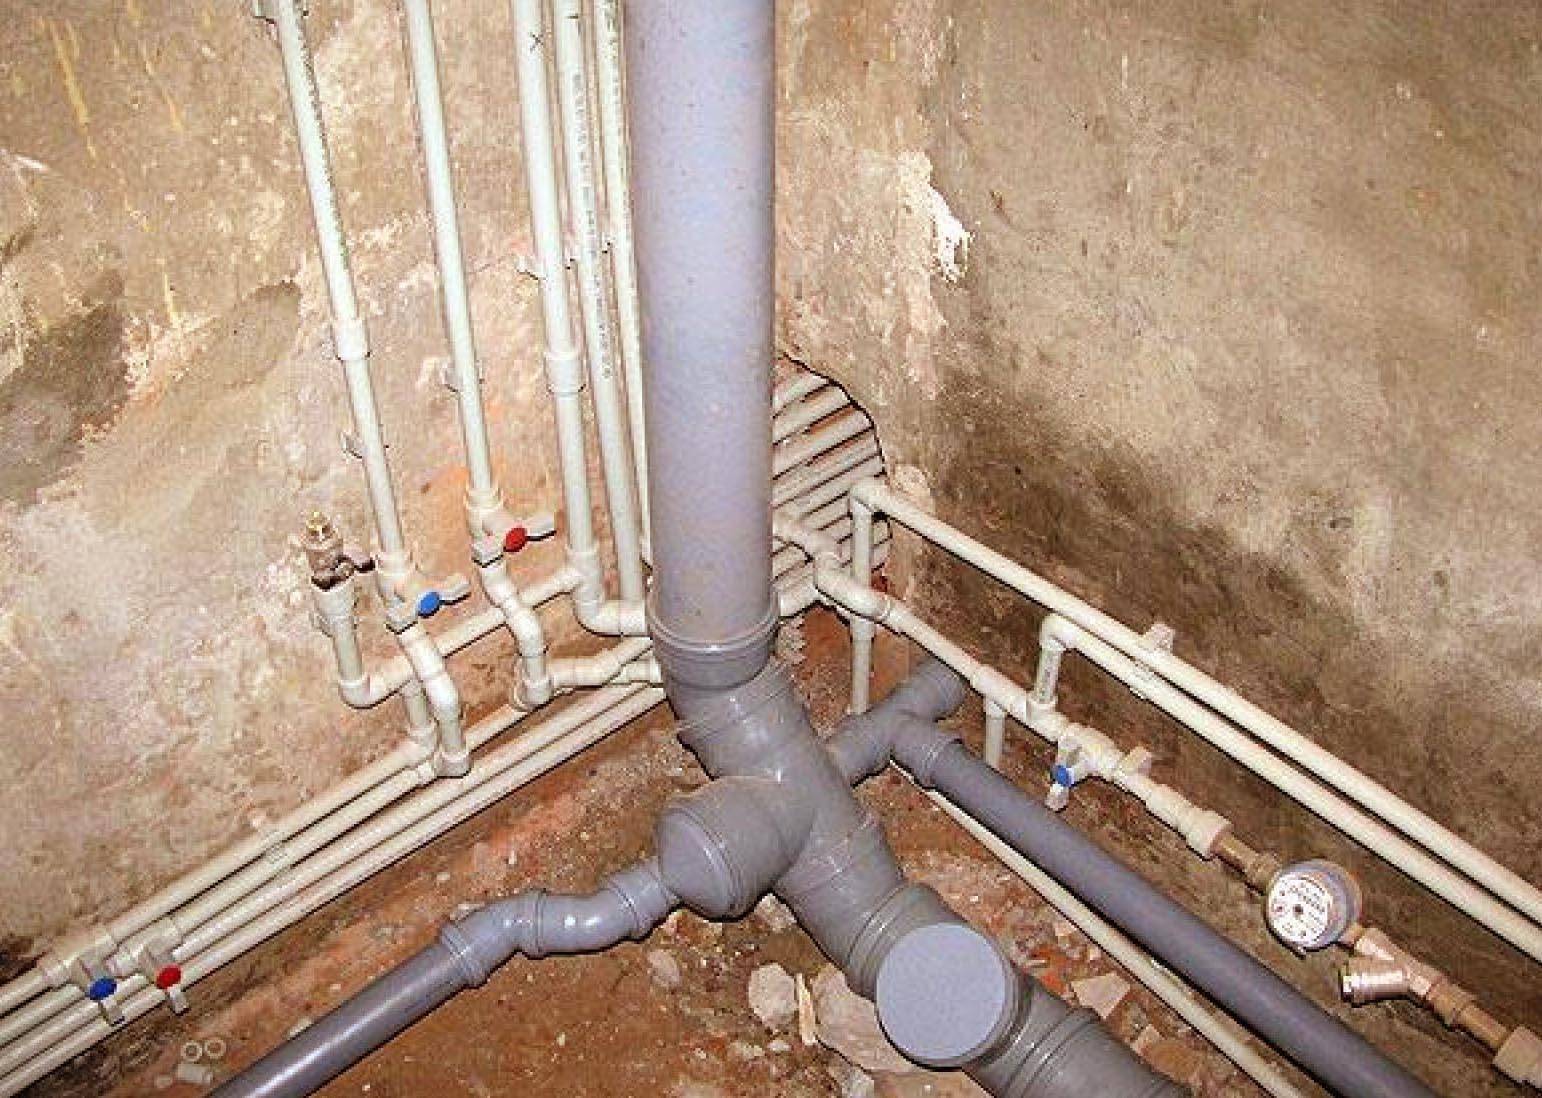 Прокладка канализационных труб в земле